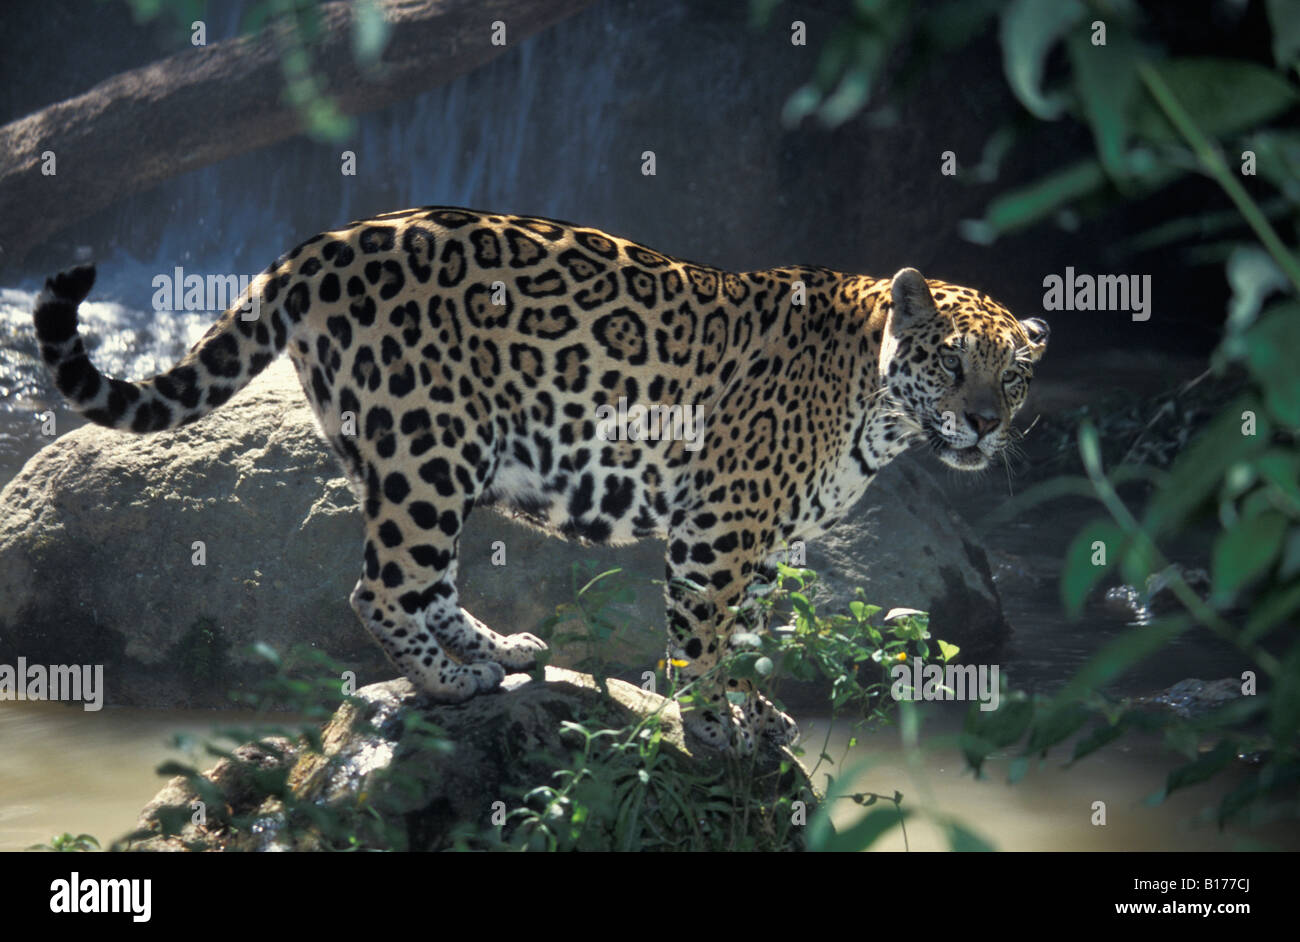 Jaguar Jaguar Panthera Onca im Regenwald Tiere große Katzen Carnivora Raubtiere Felidae Grosskatzen Jaguare Katzen Säugetiere Natu Stockfoto